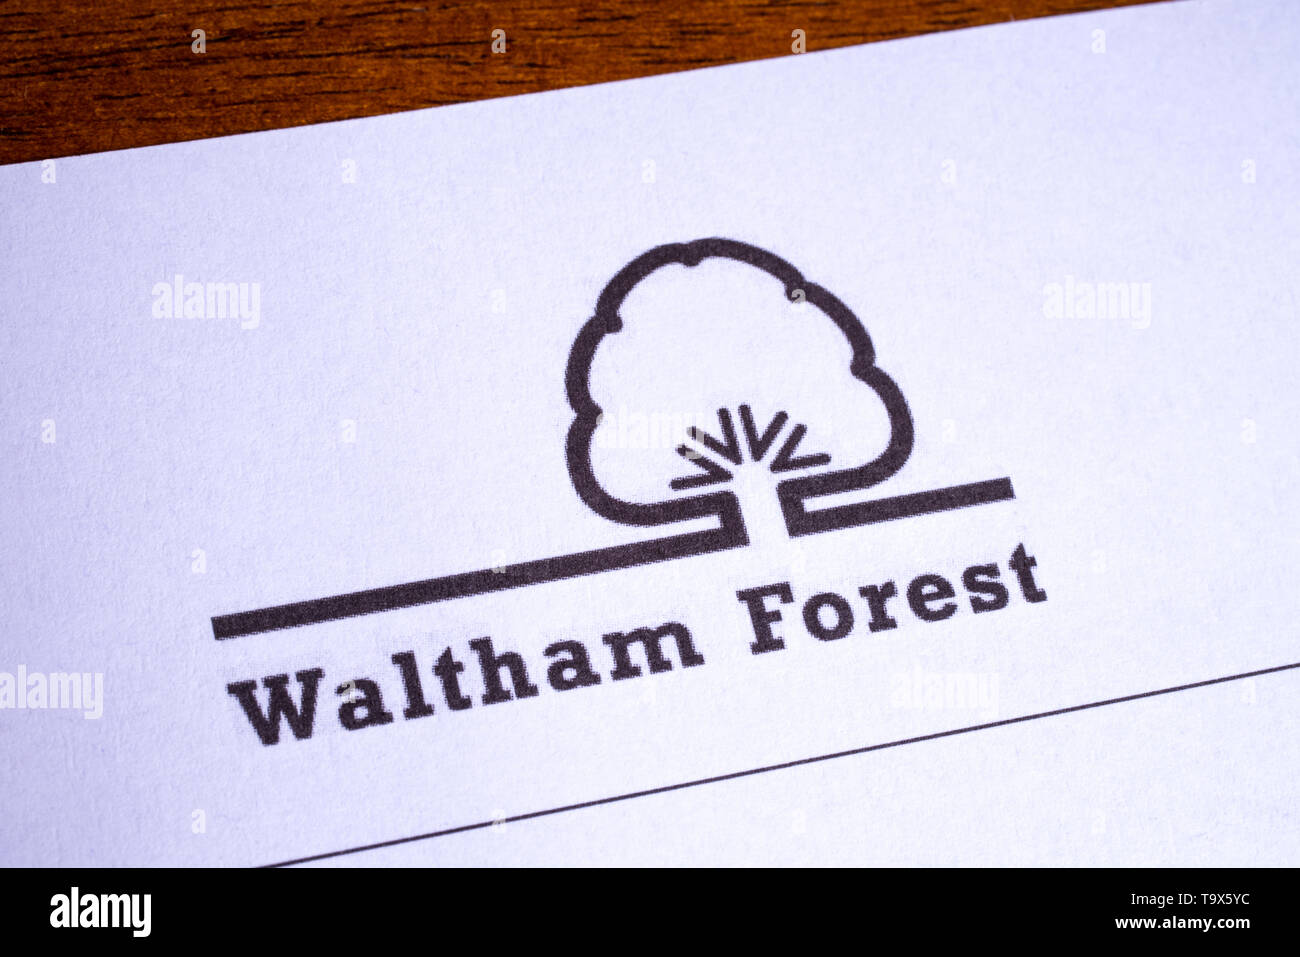 London, UK, 14. Mai 2019: Das Logo der Londoner Stadtteil Waltham Forest, dargestellt auf einem Briefkopf. Stockfoto